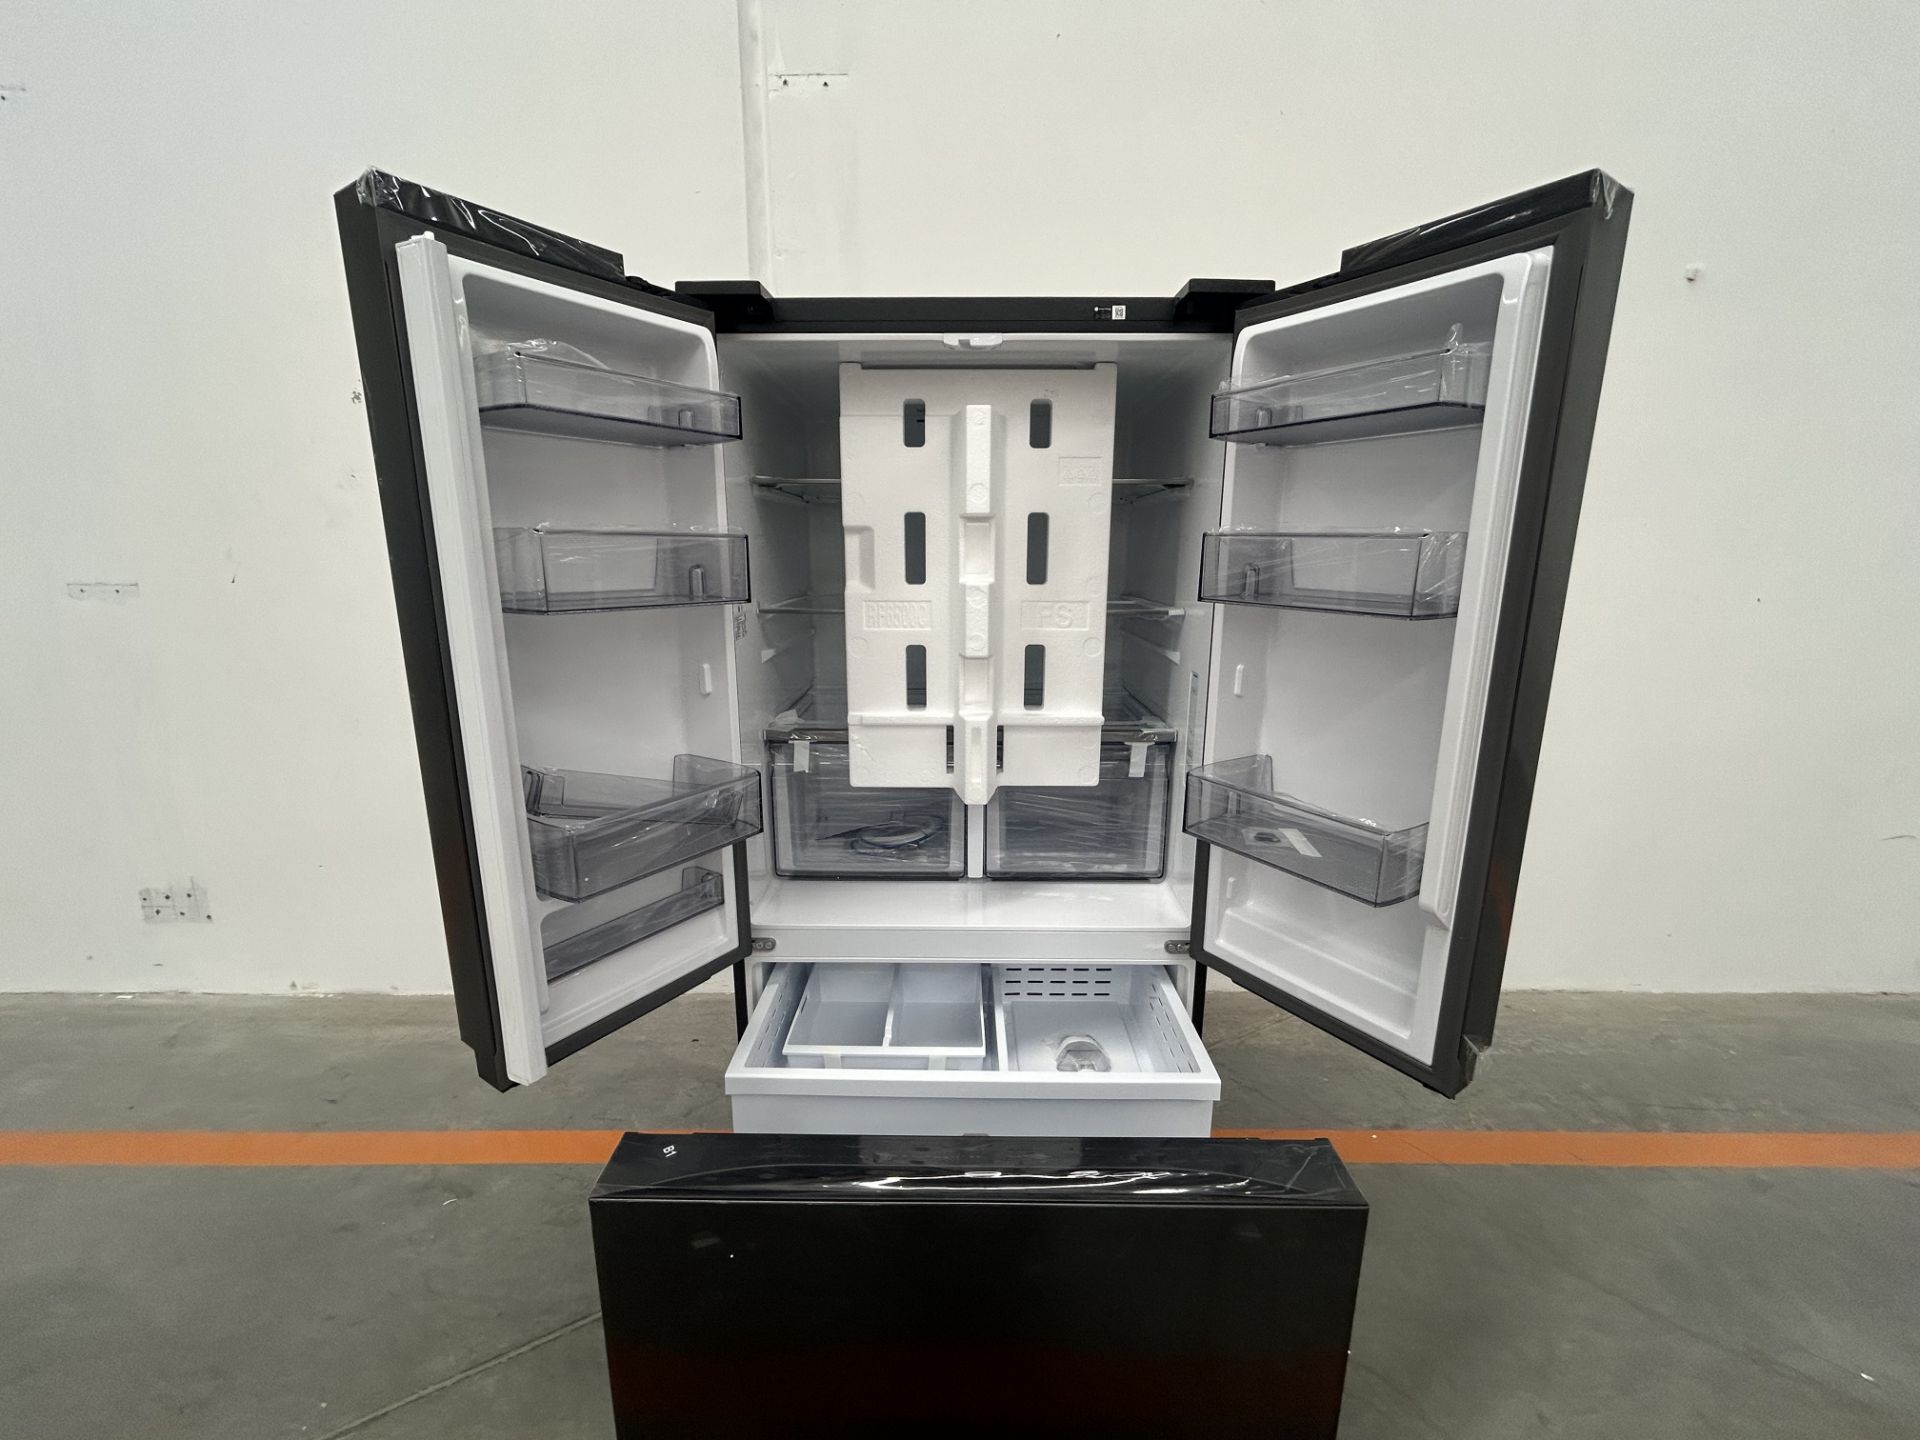 (NUEVO) Refrigerador Marca SAMSUNG, Modelo RF32CGN10B1EM, Serie 0639P, Color NEGRO - Image 4 of 4